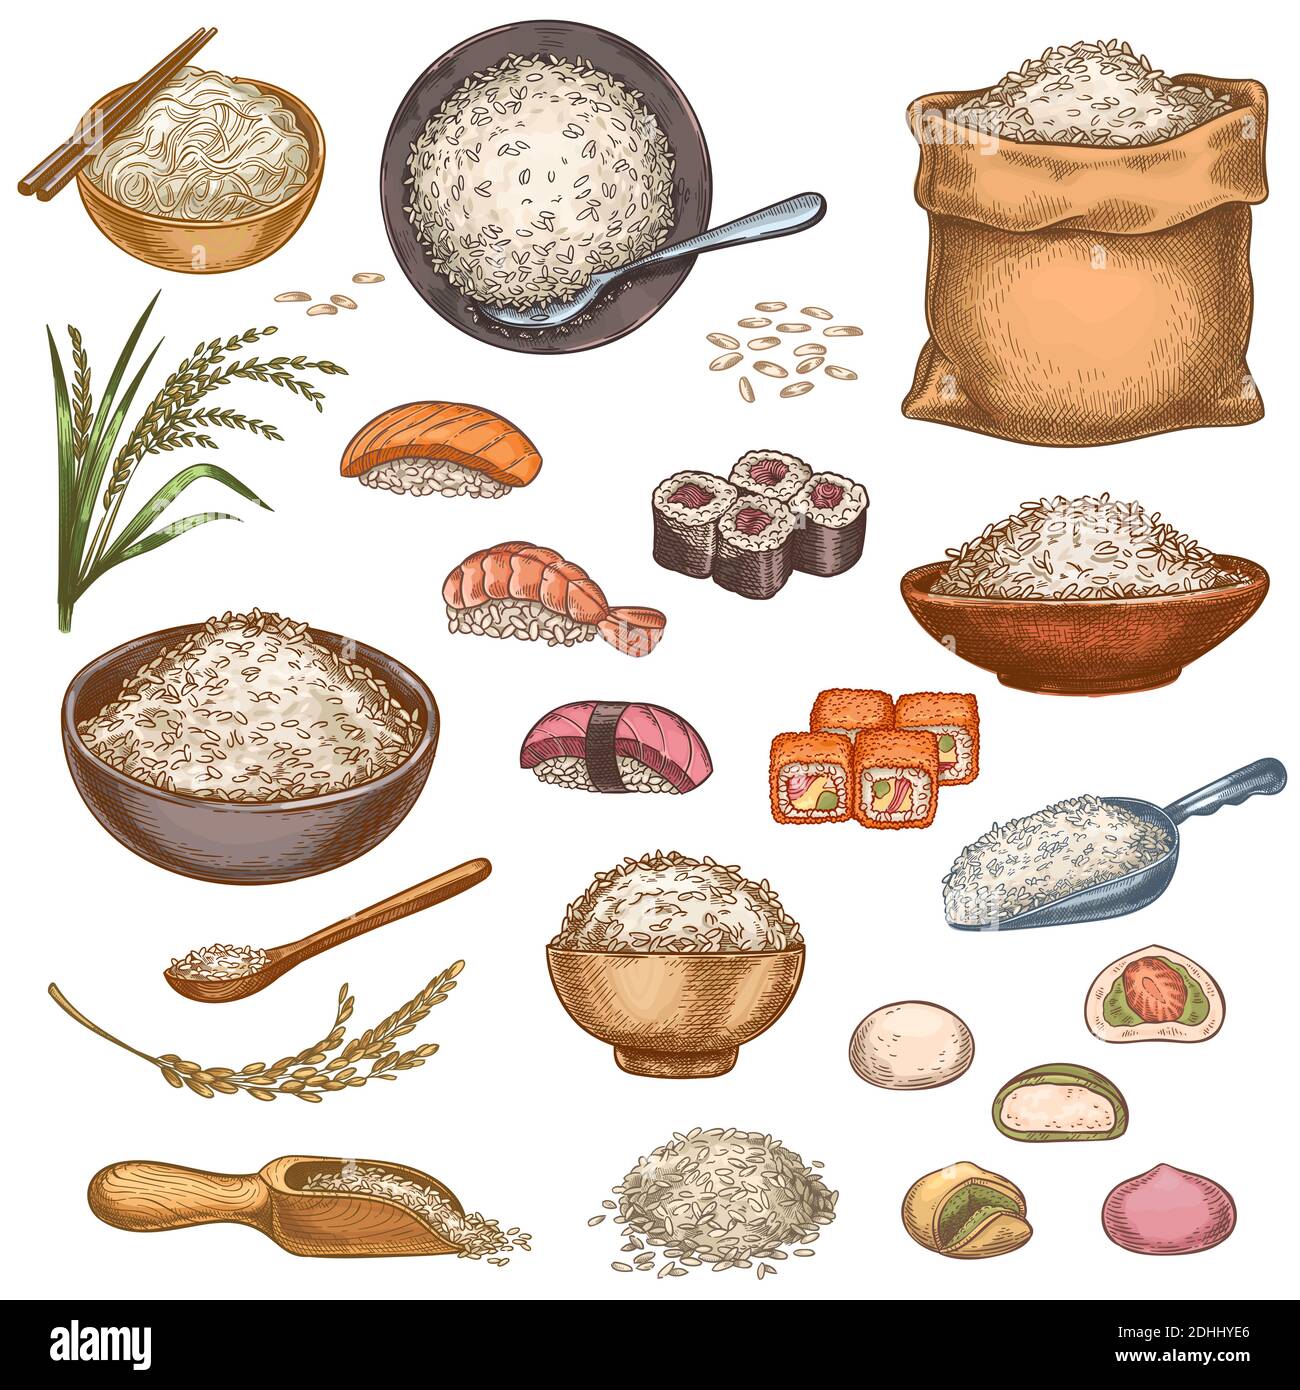 Reisgerichte. Handgezeichnete asiatische Gerichte Sushi-Brötchen, Mochi, Porridge Schüssel und Nudeln. Beutel und Stapel von Reiskörnern. Japanische Küche Vektorset Stock Vektor